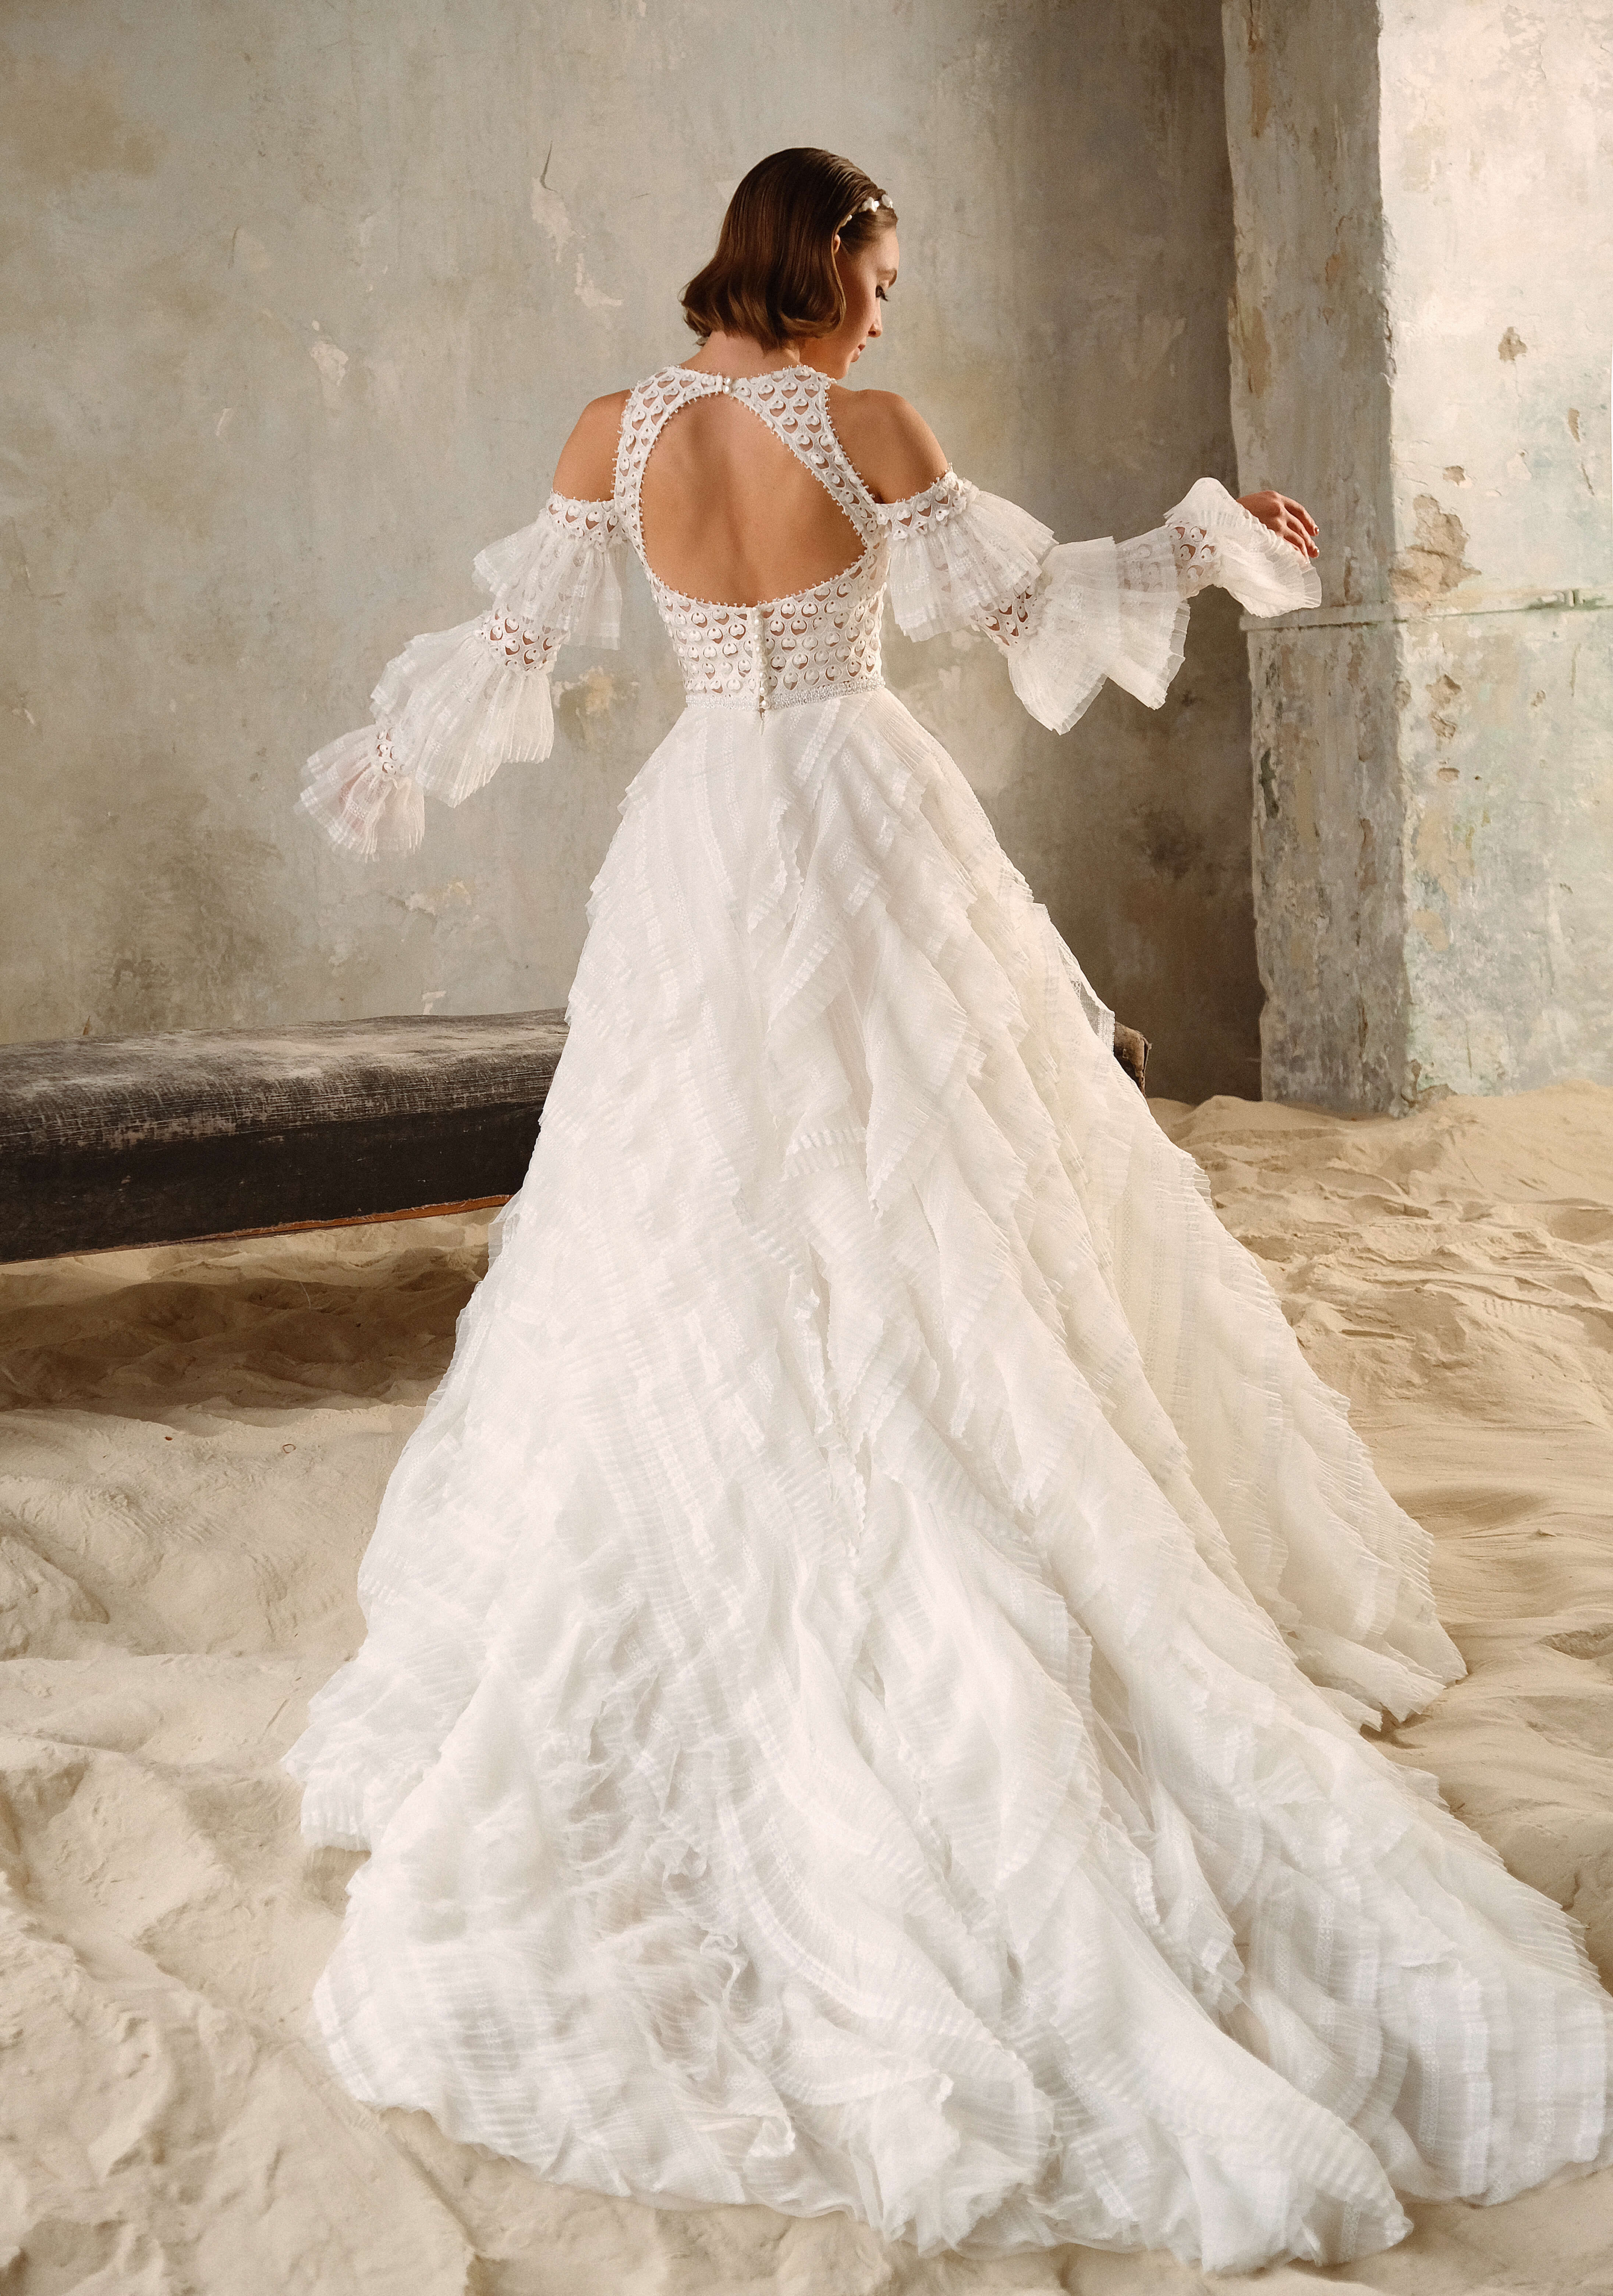 Купить свадебное платье «Амато» Рара Авис из коллекции Мермейд 2022 года в салоне «Мэри Трюфель»